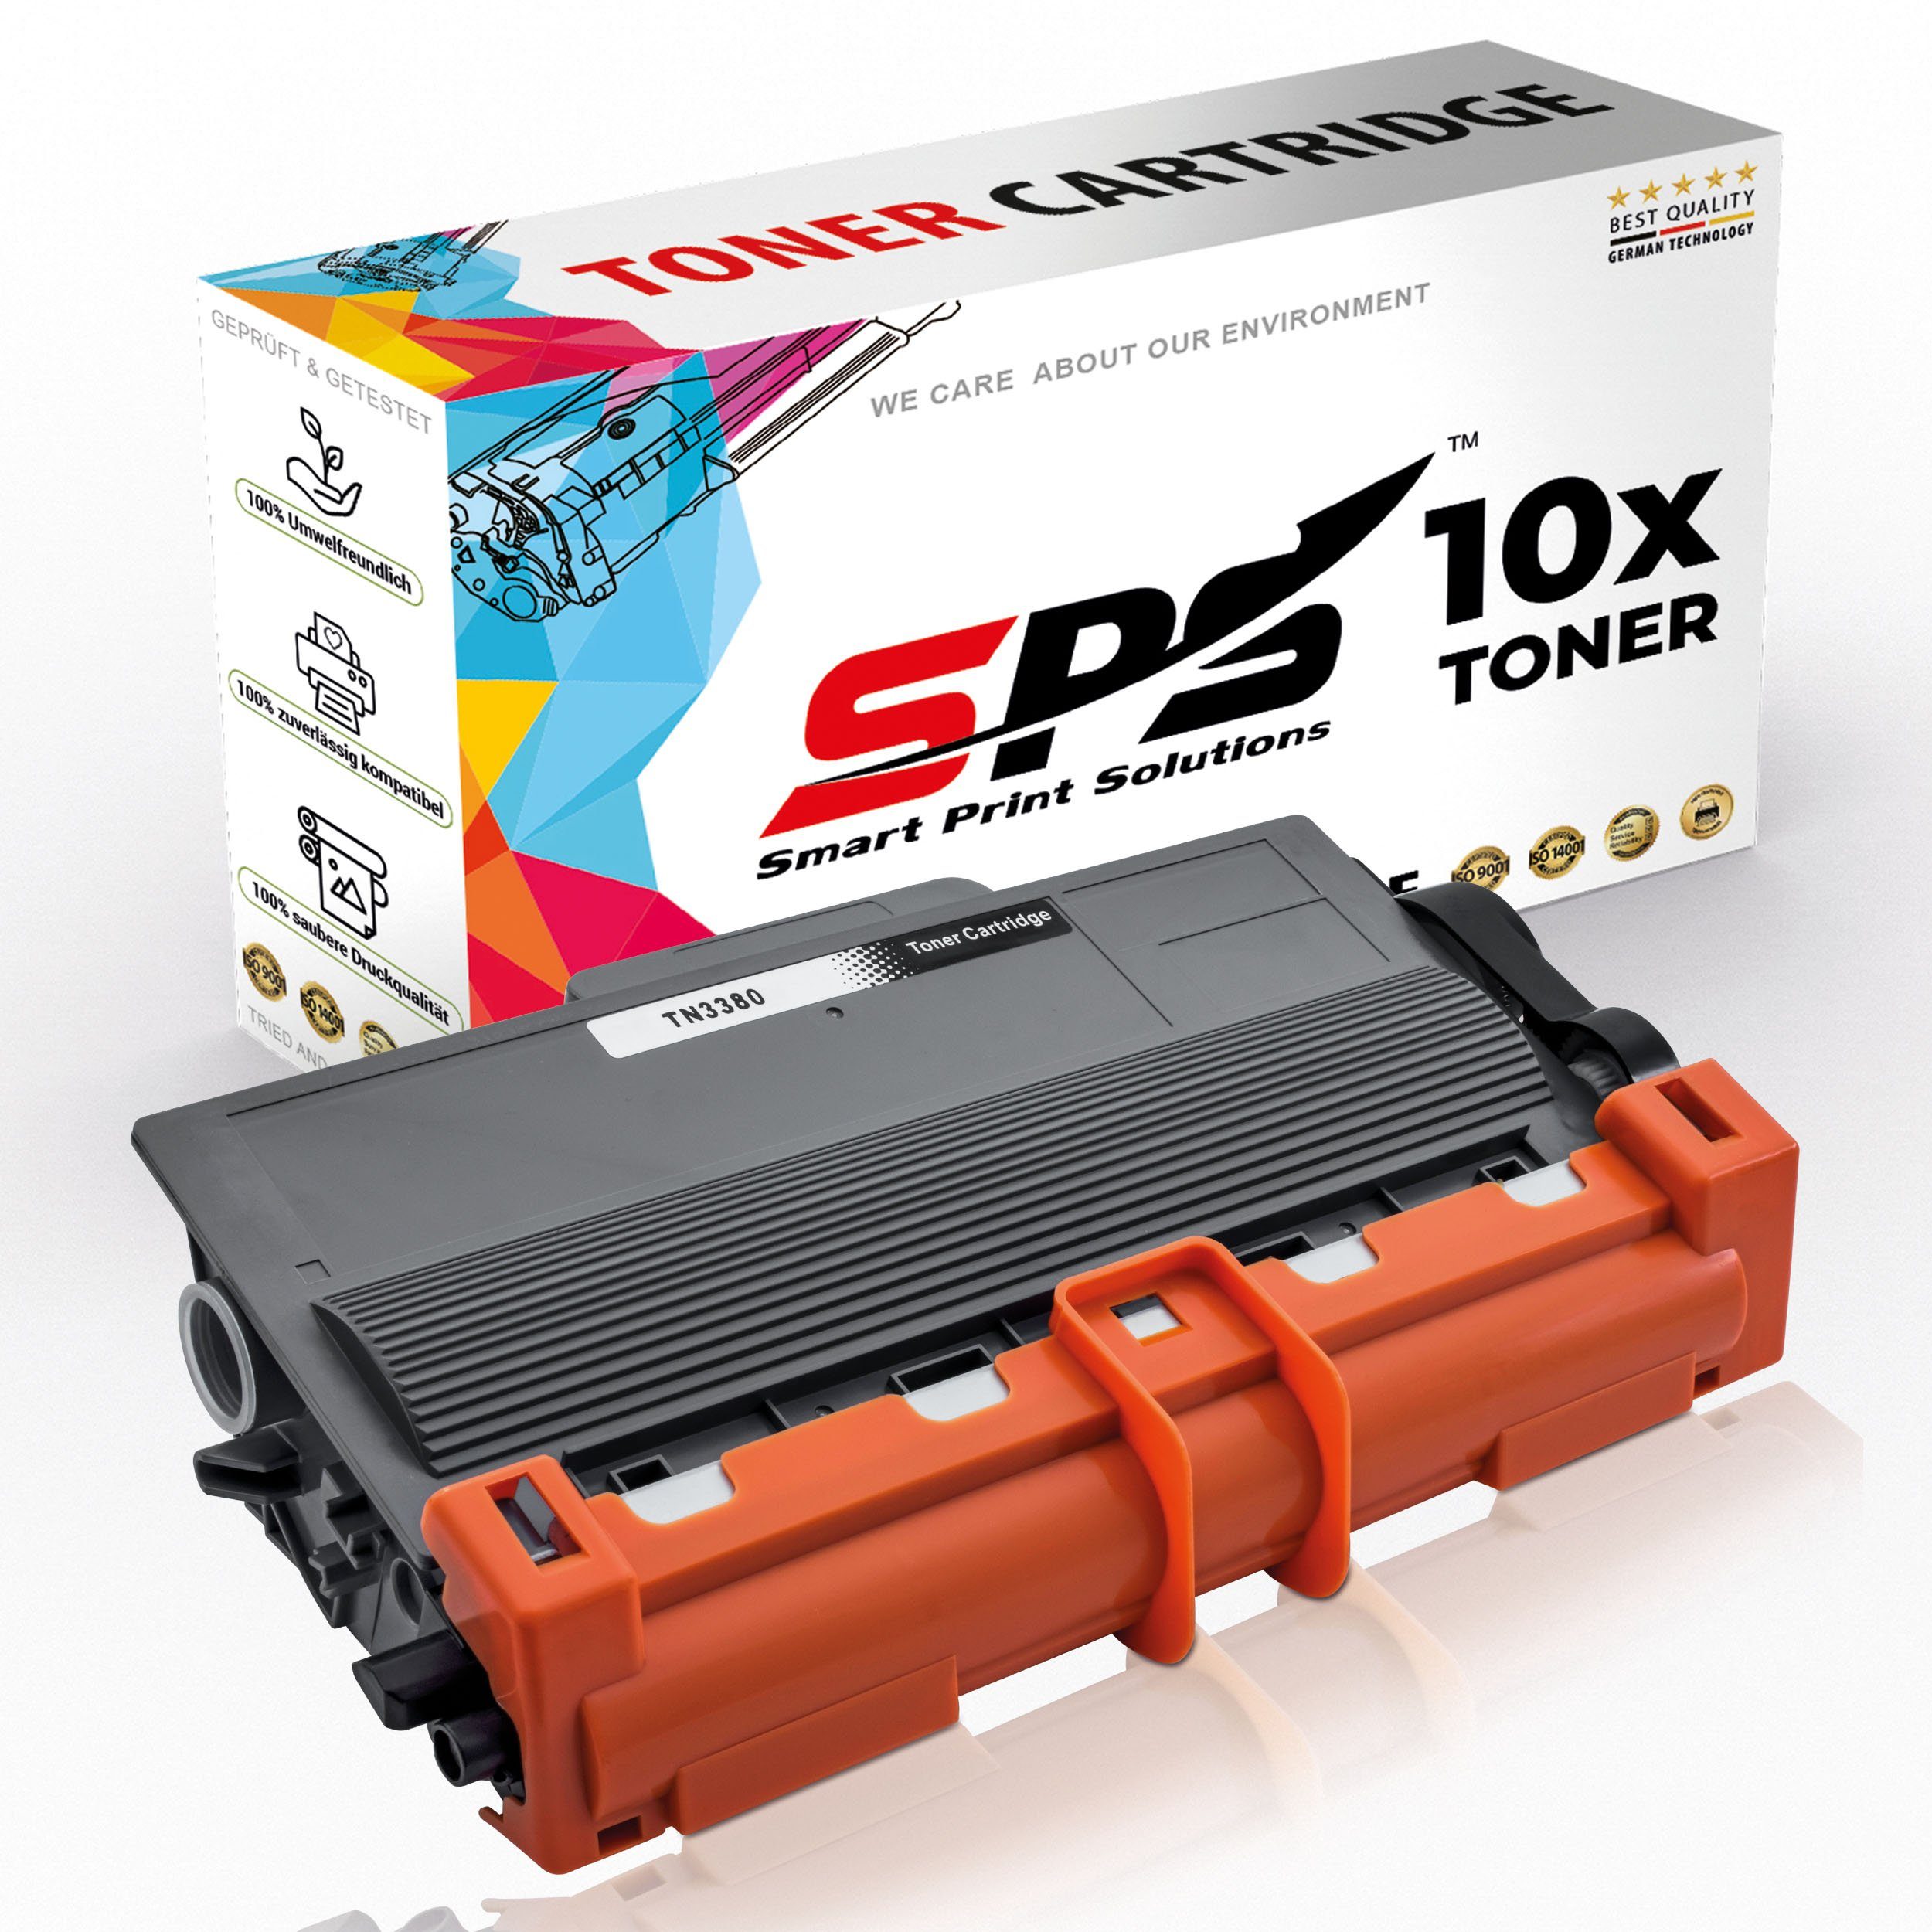 SPS Tonerkartusche Kompatibel für Brother MFC-8510 TN-3380, (10er Pack)